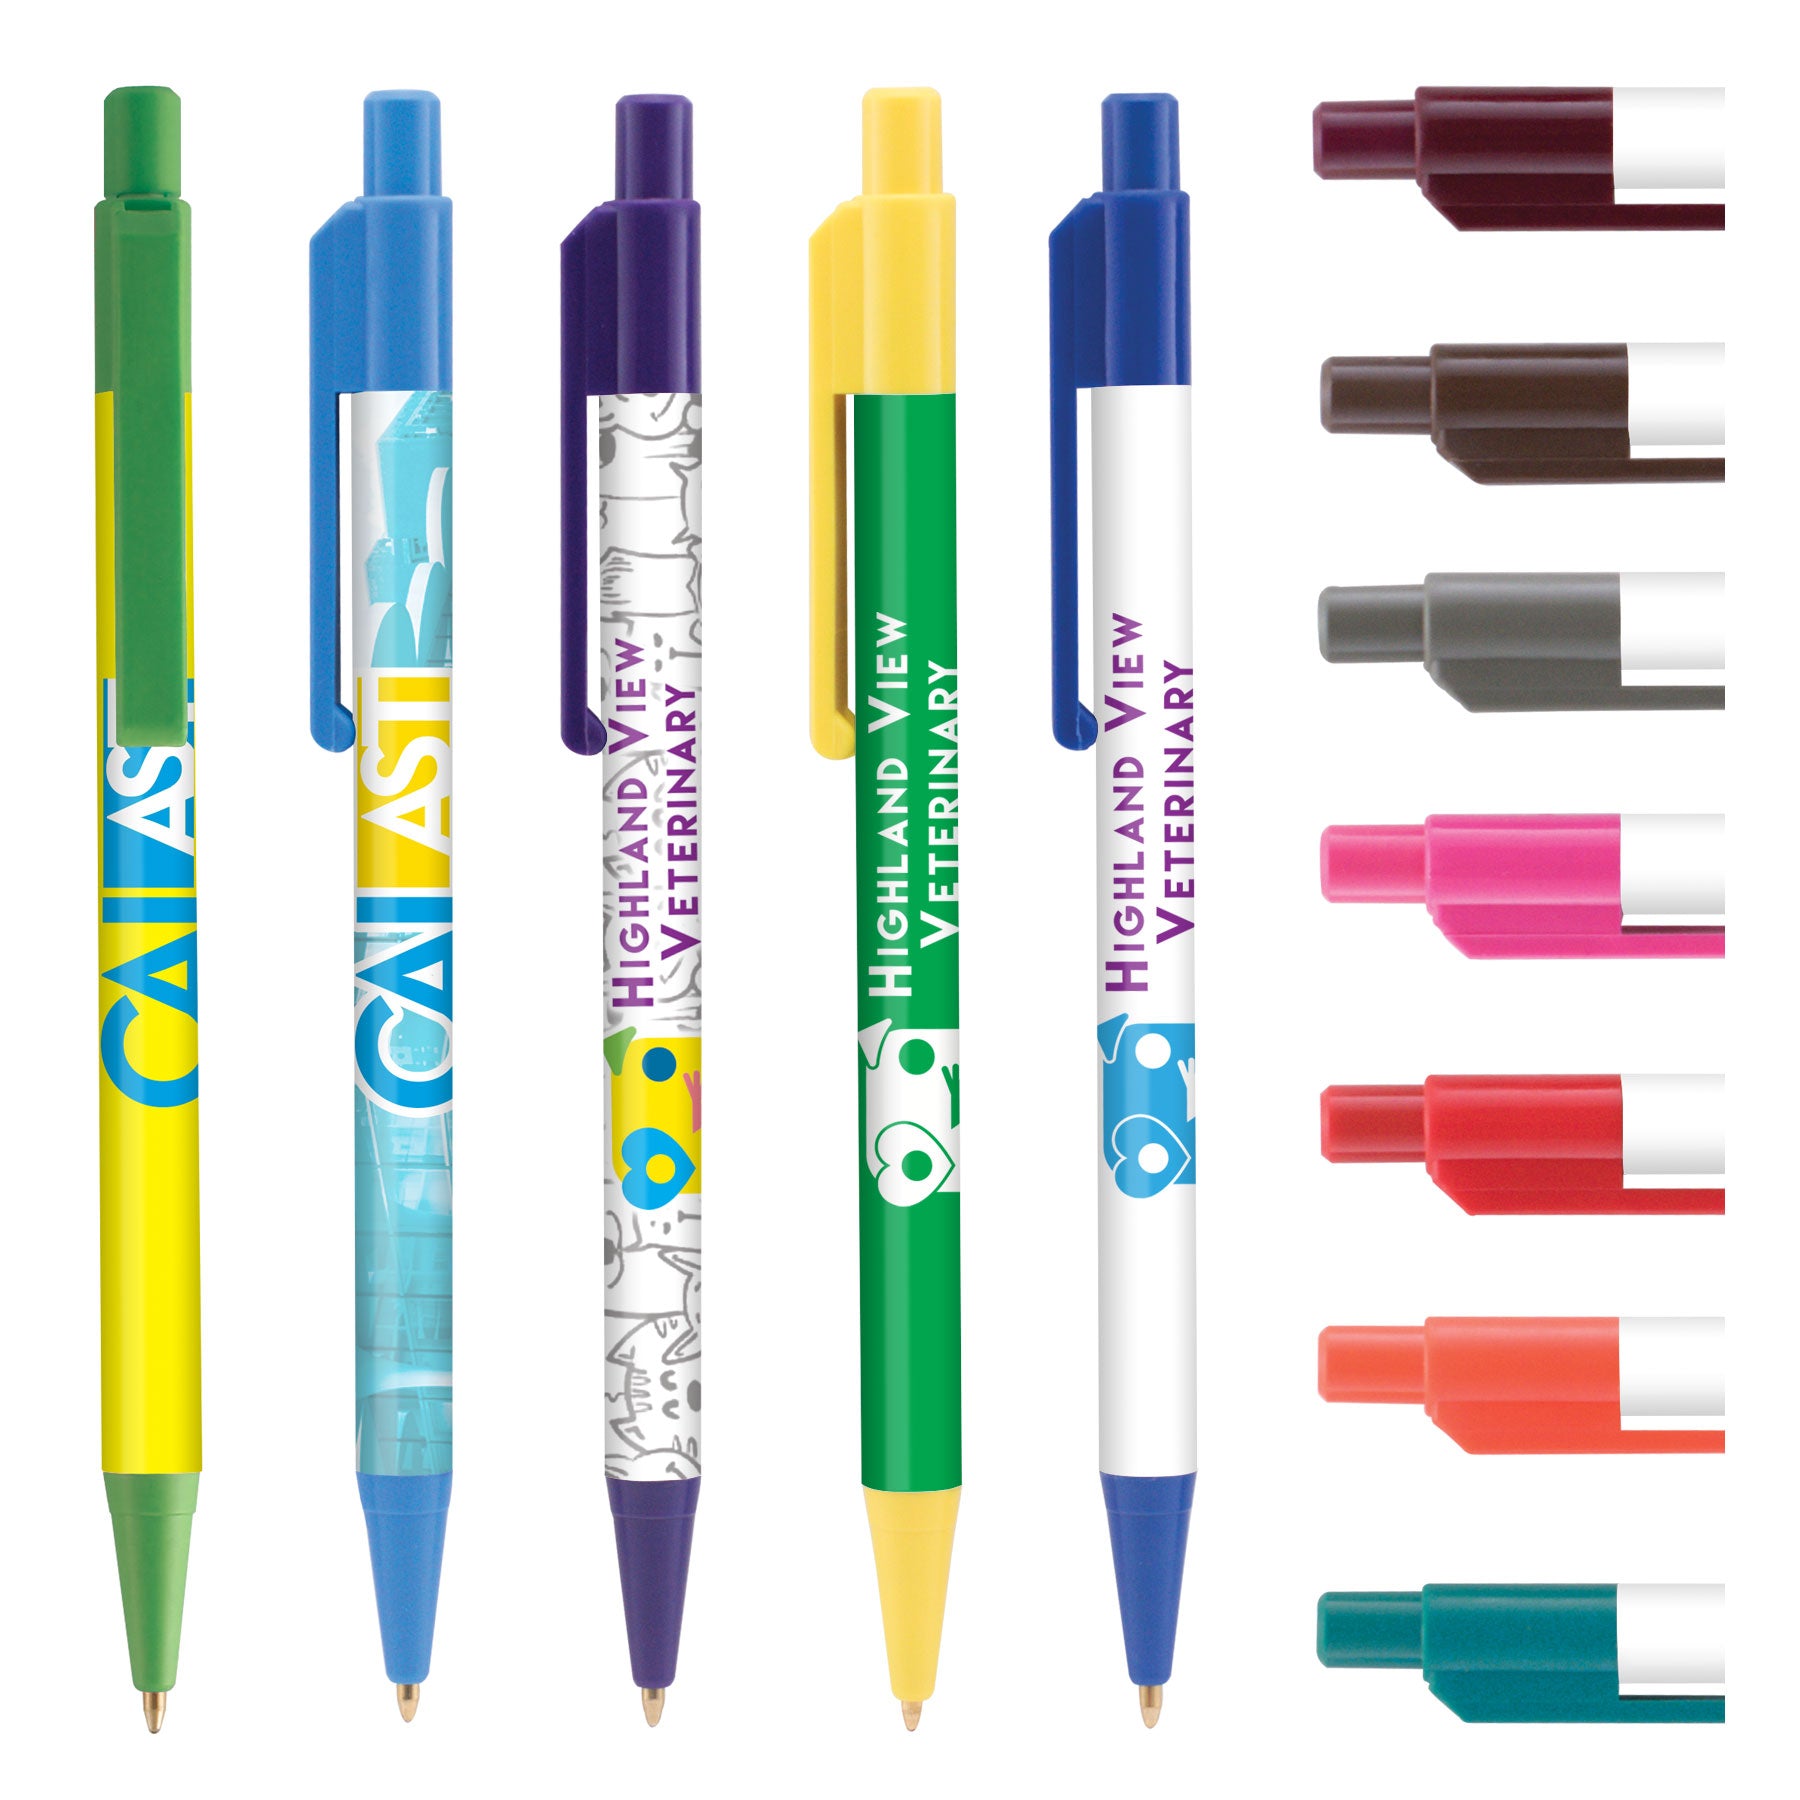 printed pens - colors